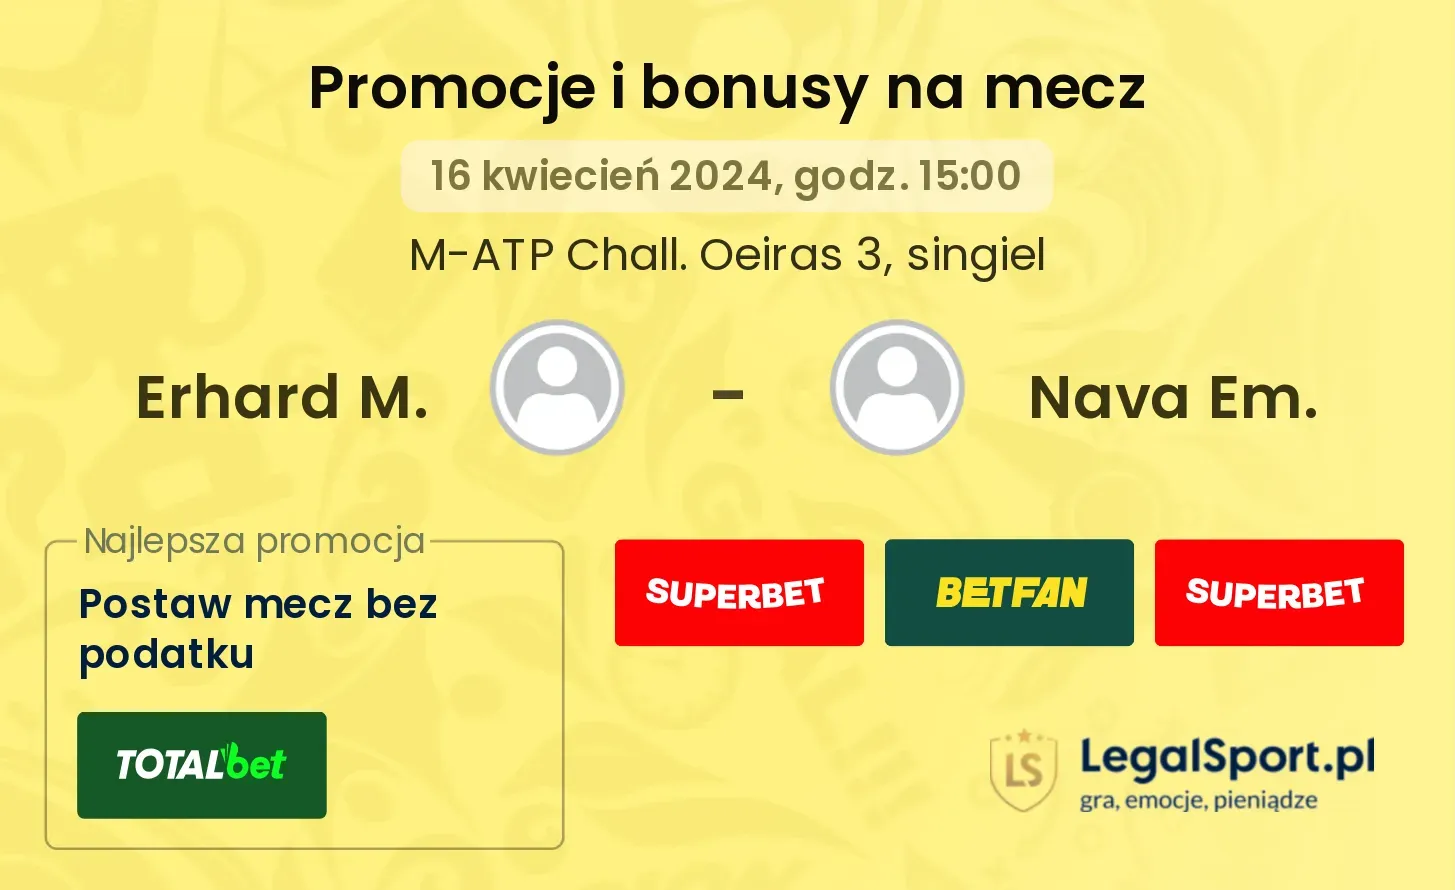 Erhard M. - Nava Em. promocje bonusy na mecz